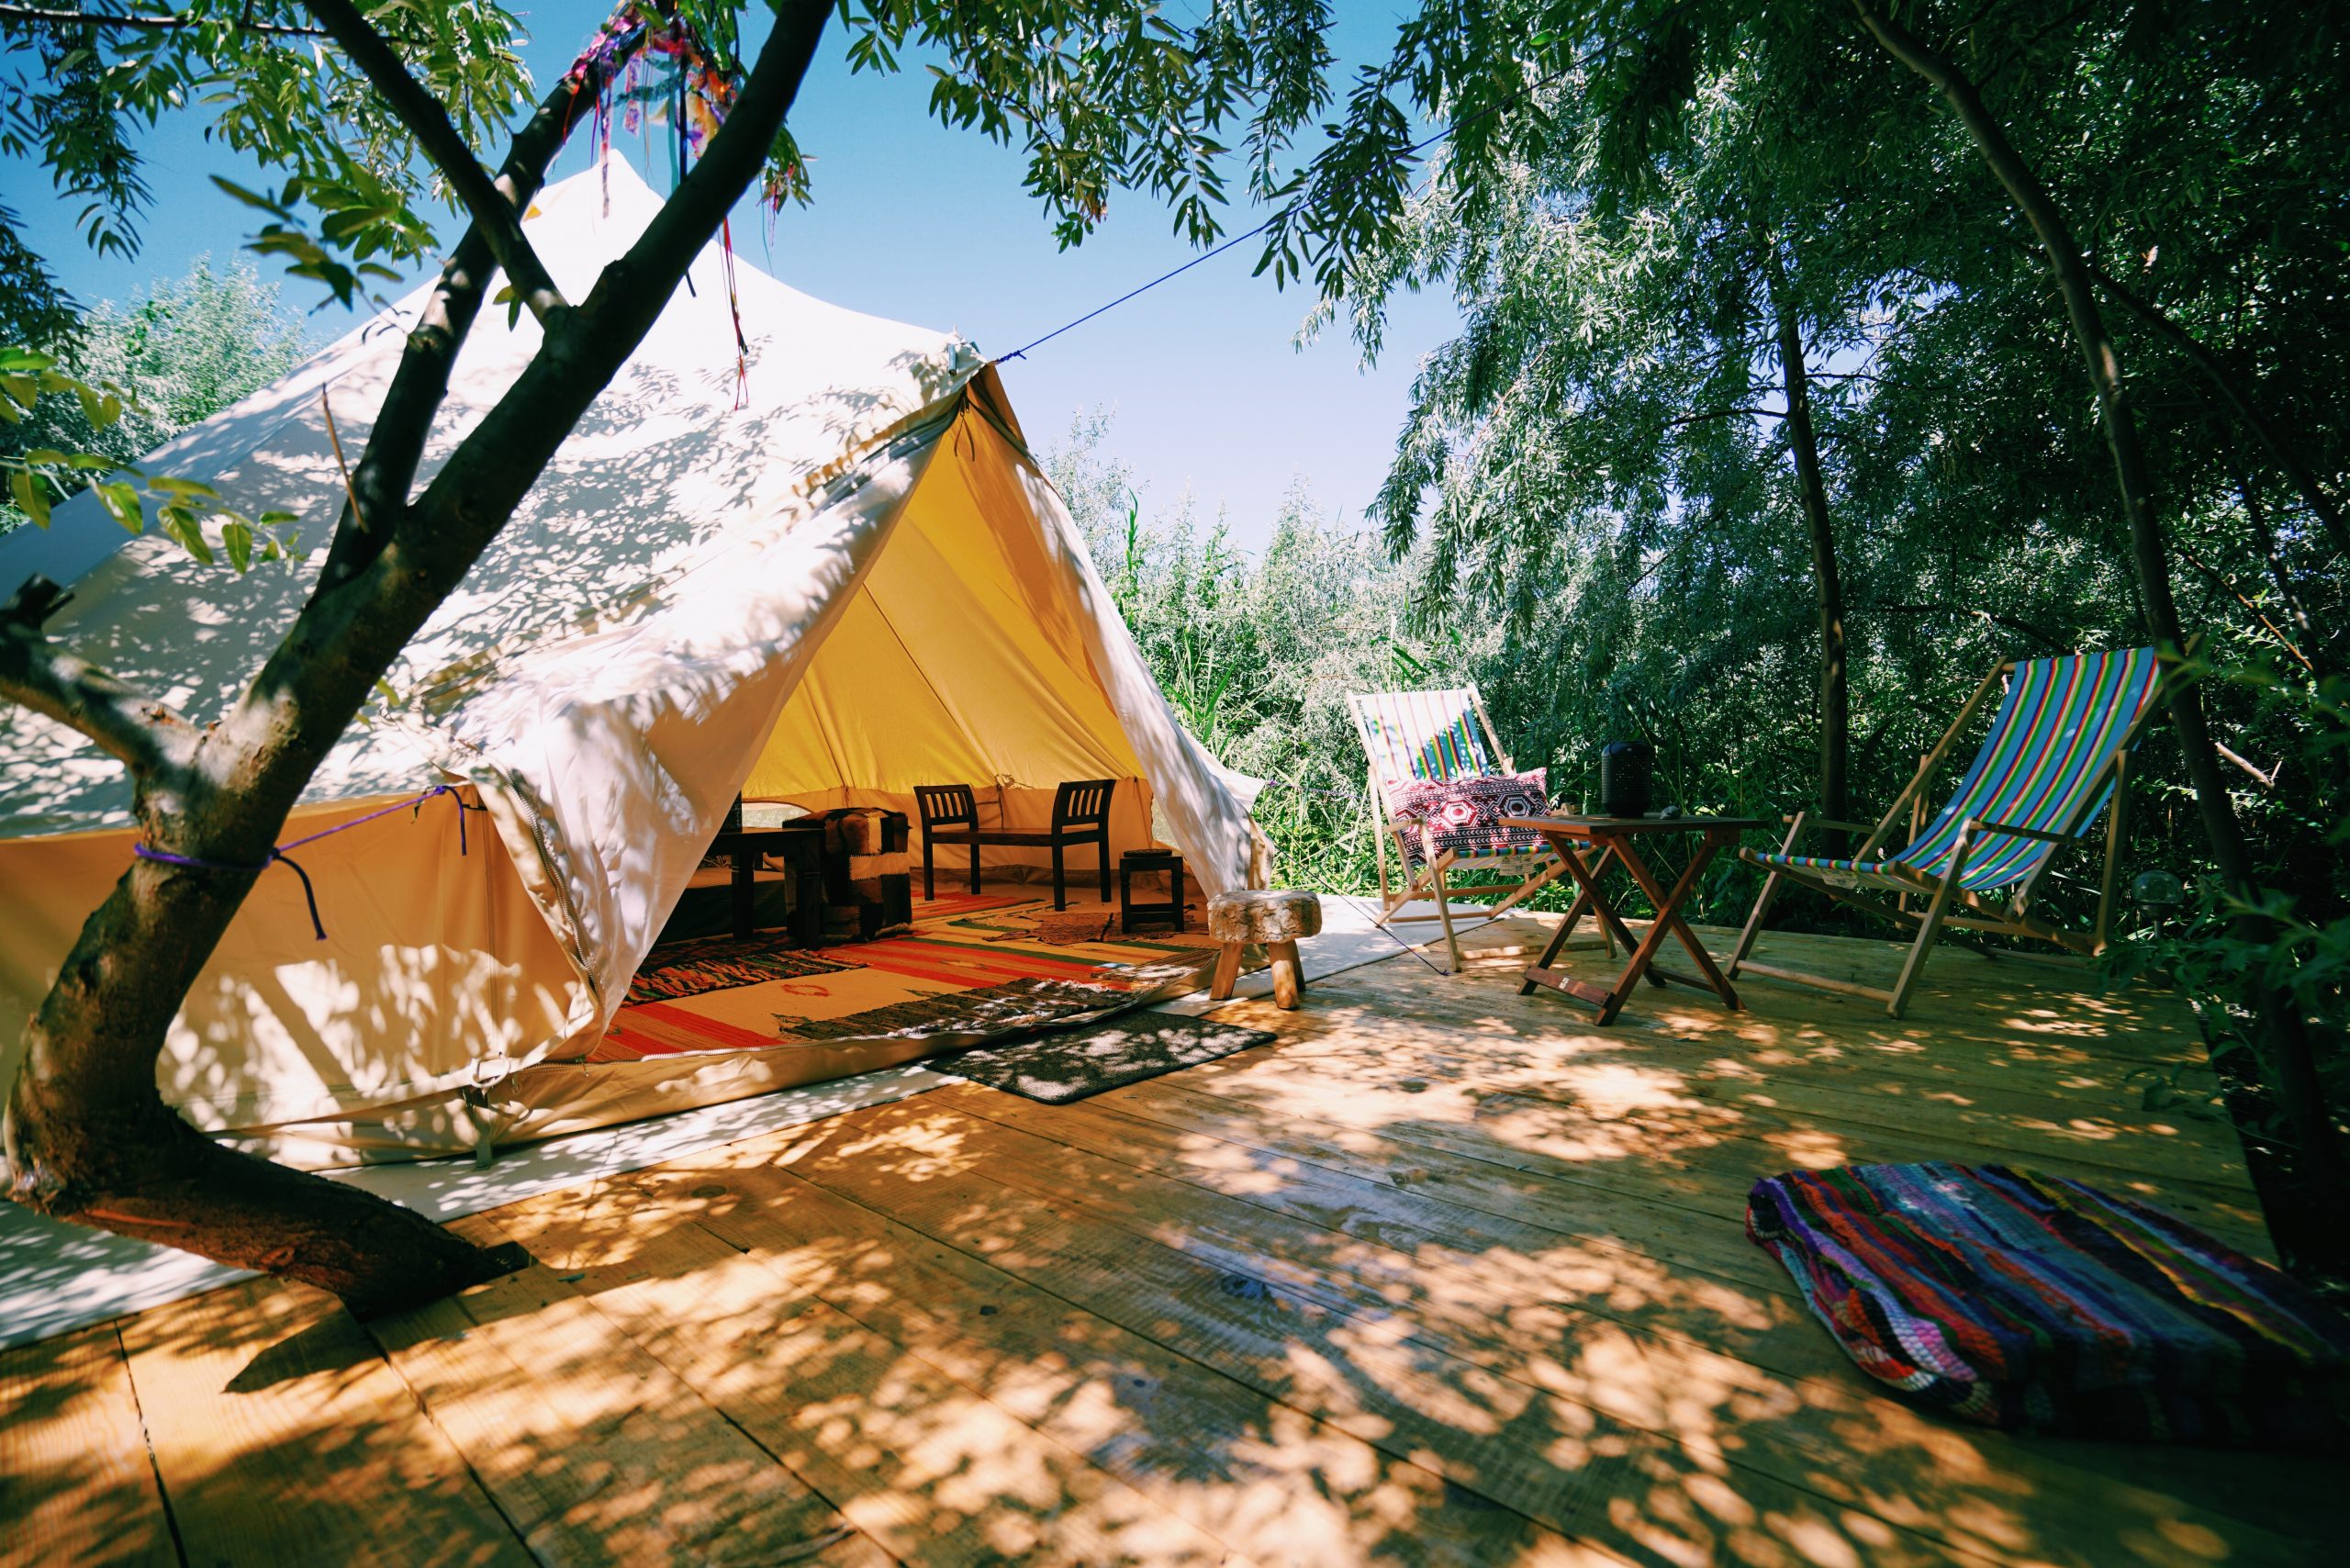 Camping tent setup © Moise Sebastian